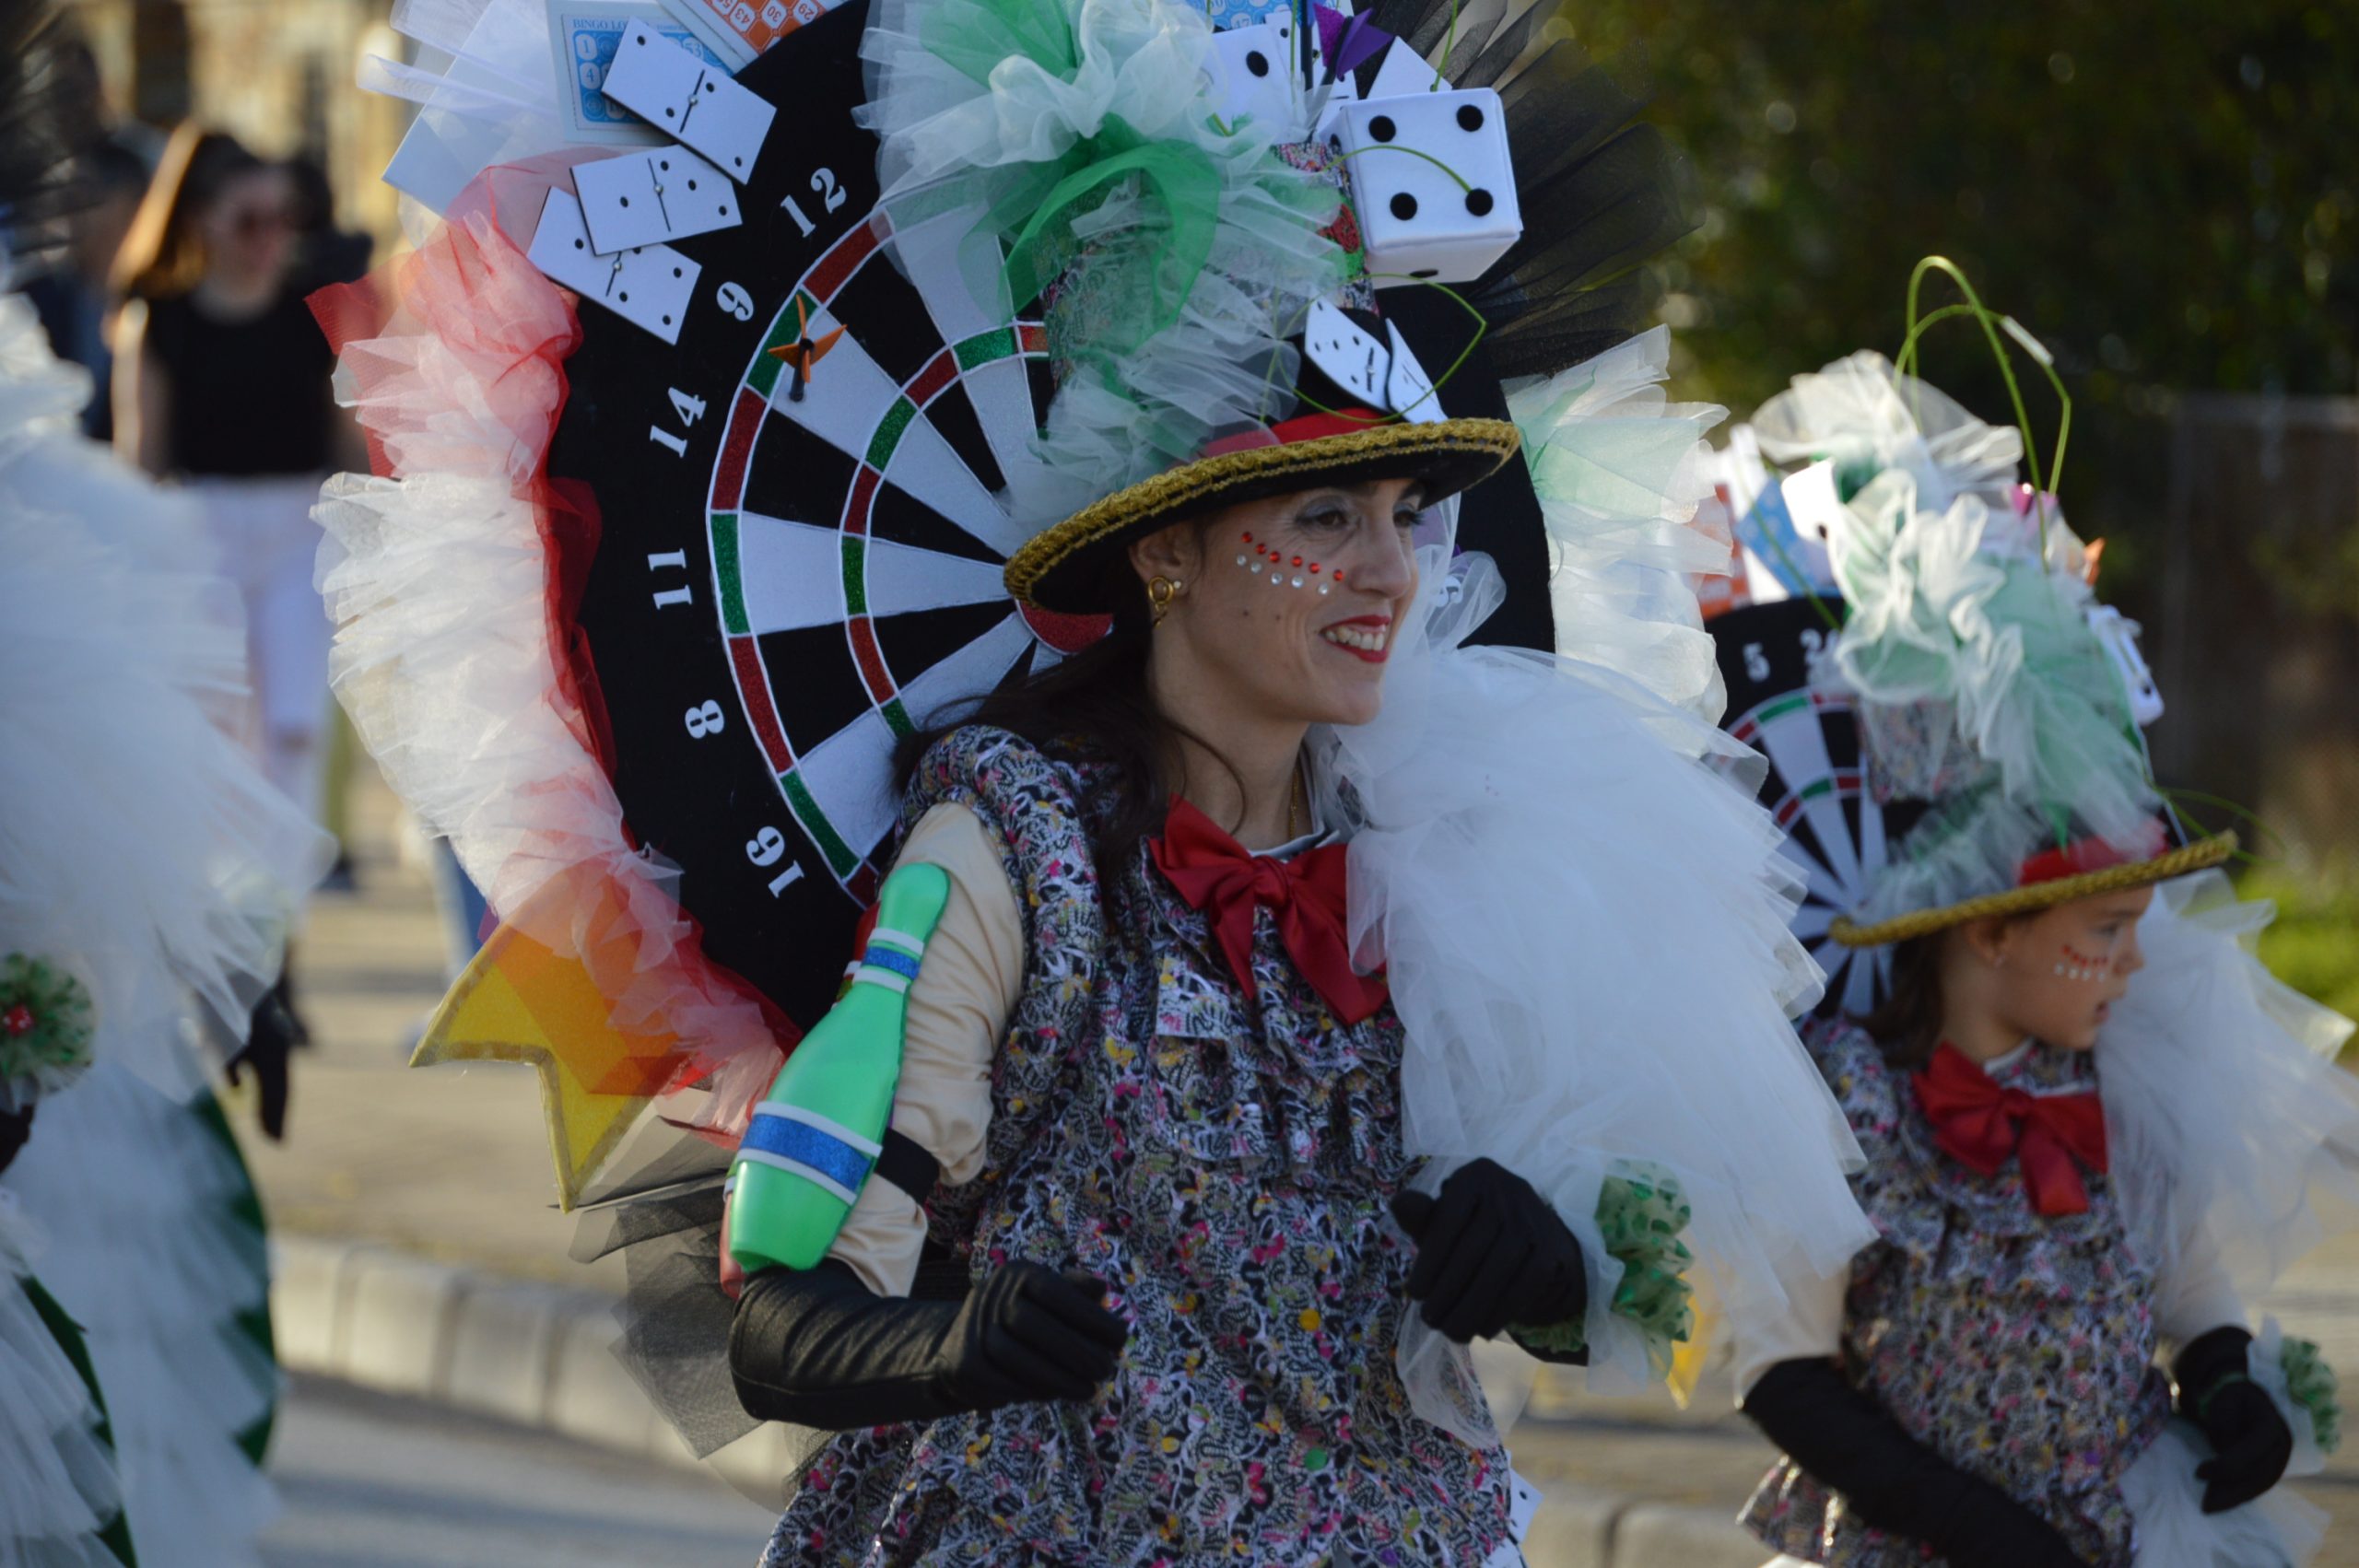 La alegría del Carnaval recorre Cubillos del Sil bajo un sol casi-primaveral 30